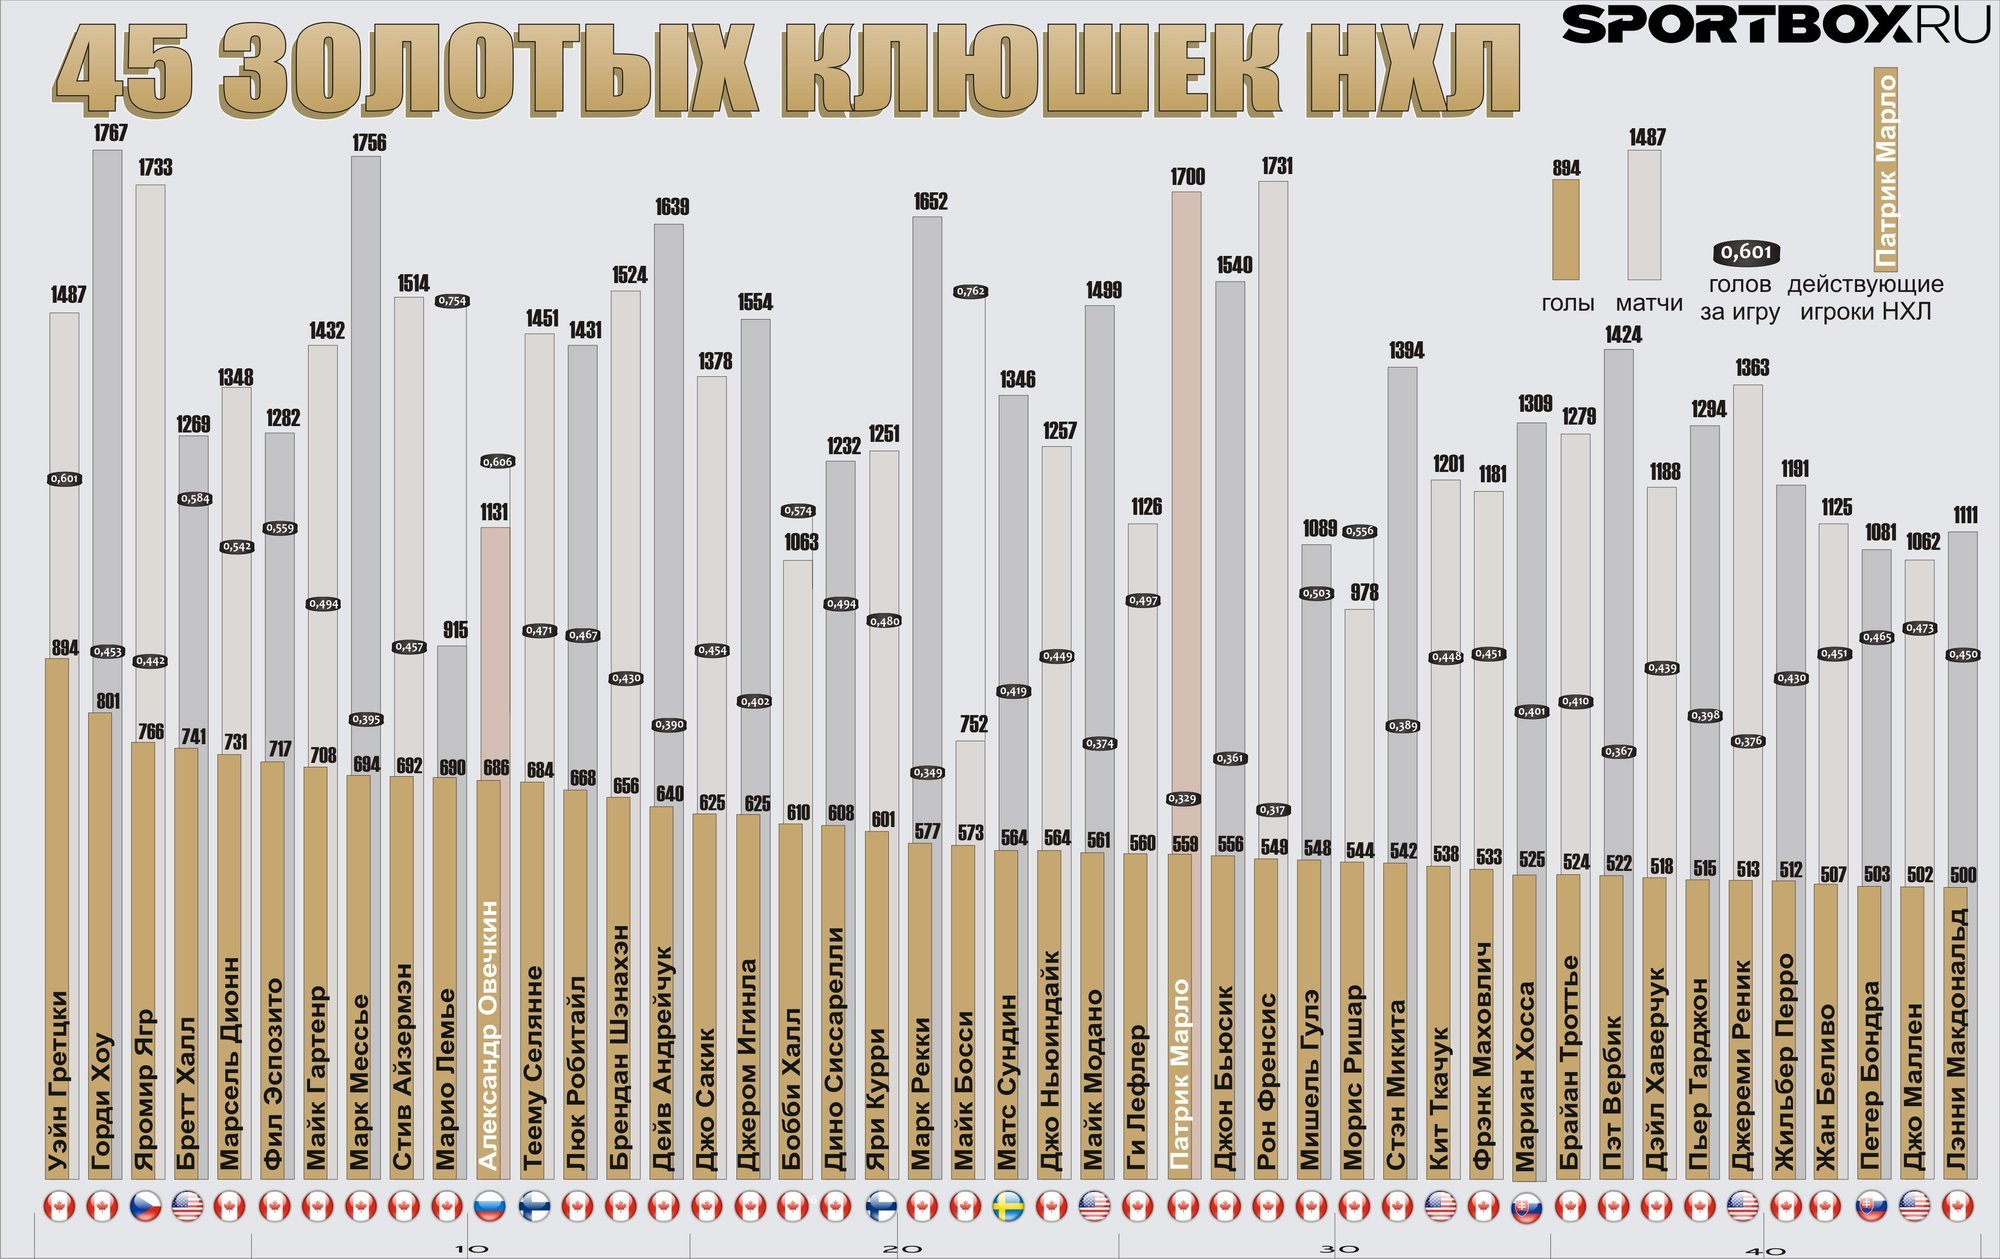 Нхл статистика бомбардиров за всю историю. НХЛ статистика игроков за всю историю Снайперы. Лучшие Снайперы НХЛ. Таблица снайперов НХЛ. Список снайперов НХЛ за всю историю.